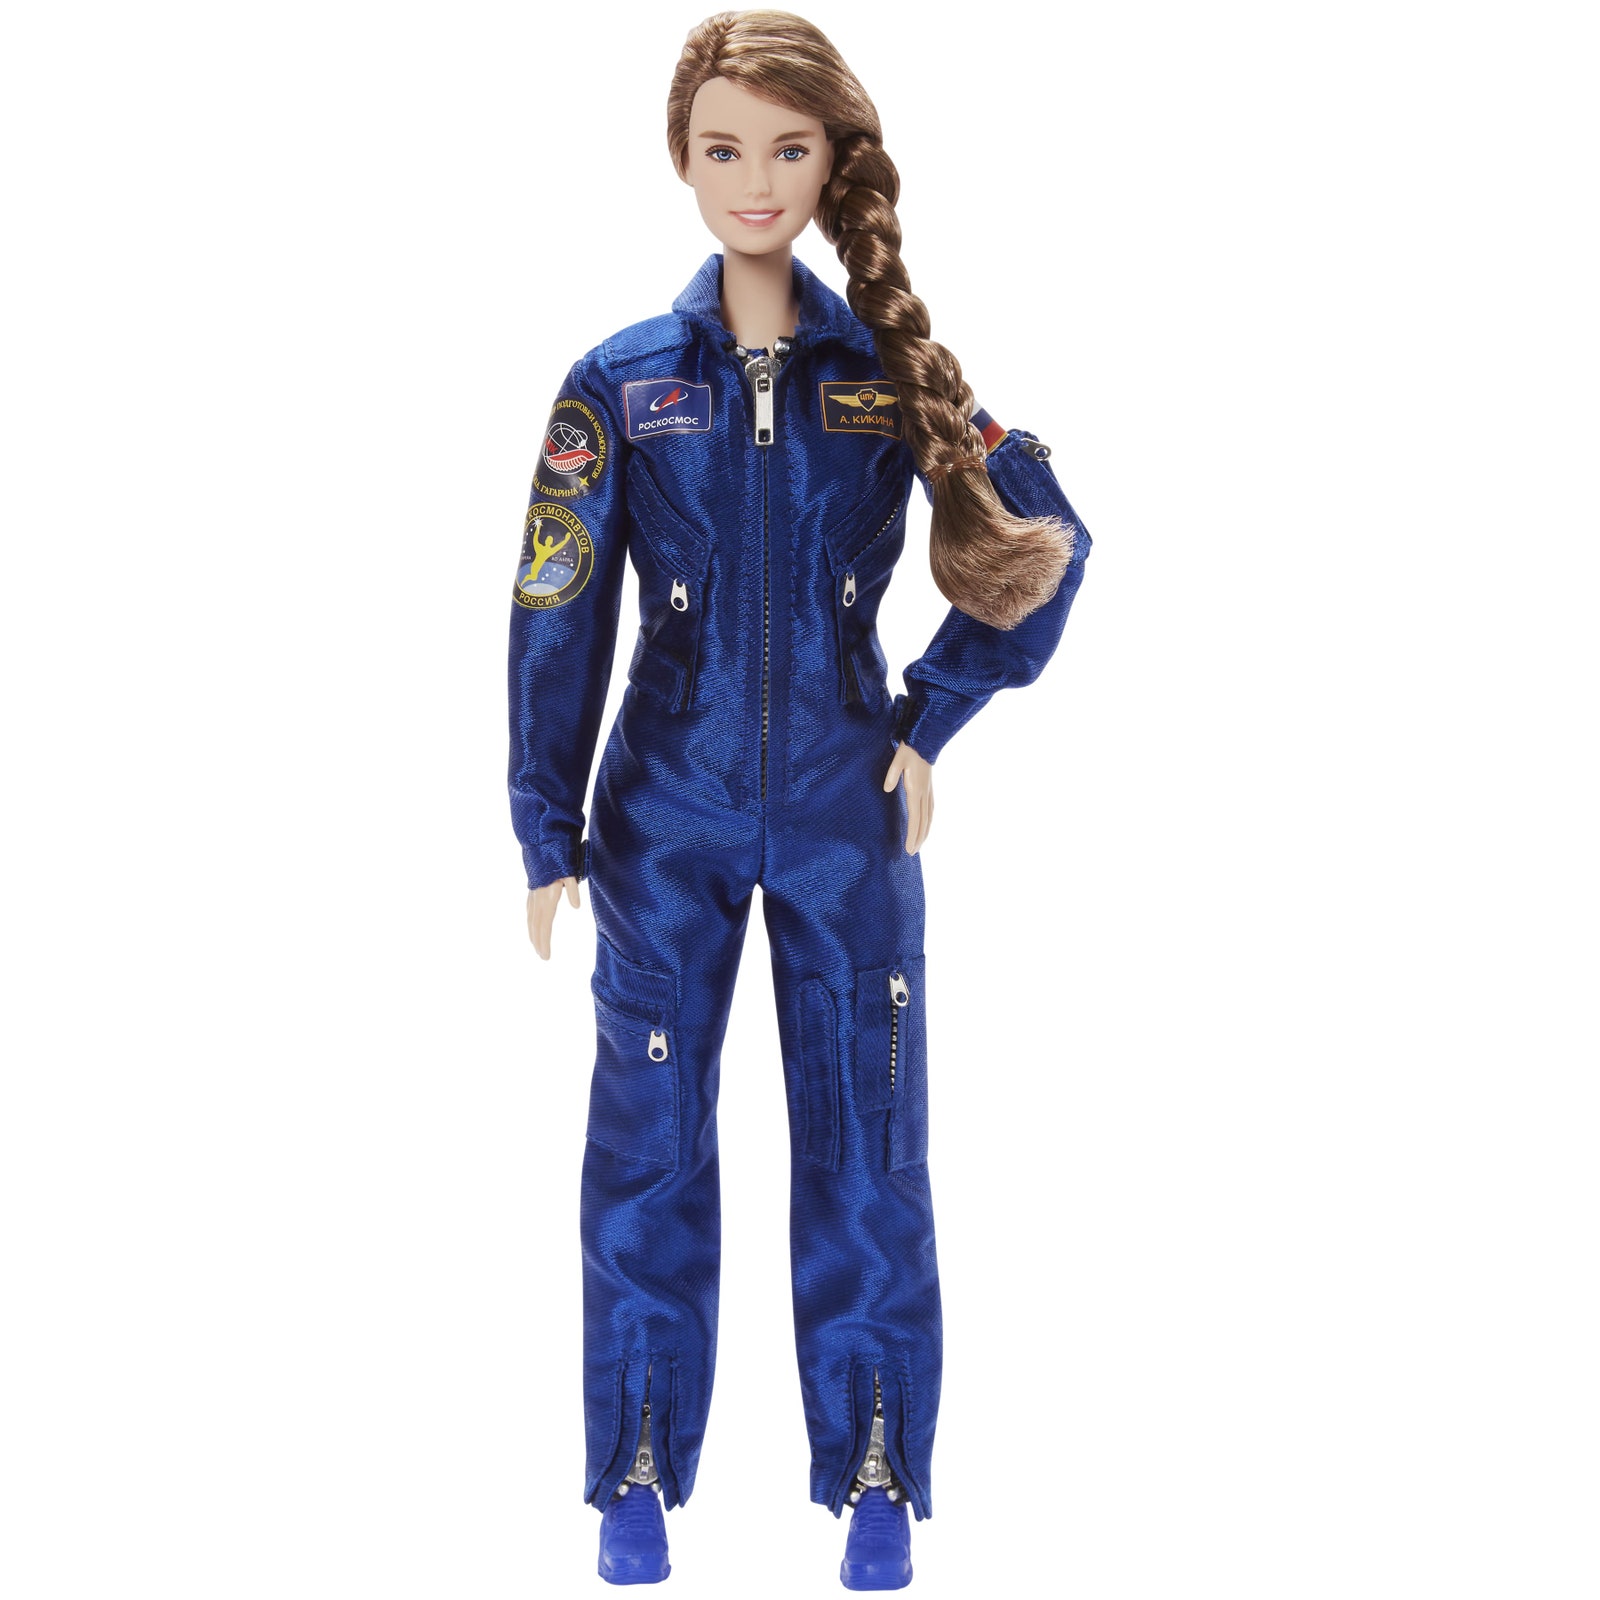 Barbie посвятил куклу Анне Кикиной единственной женщине в отряде космонавтов Роскосмоса